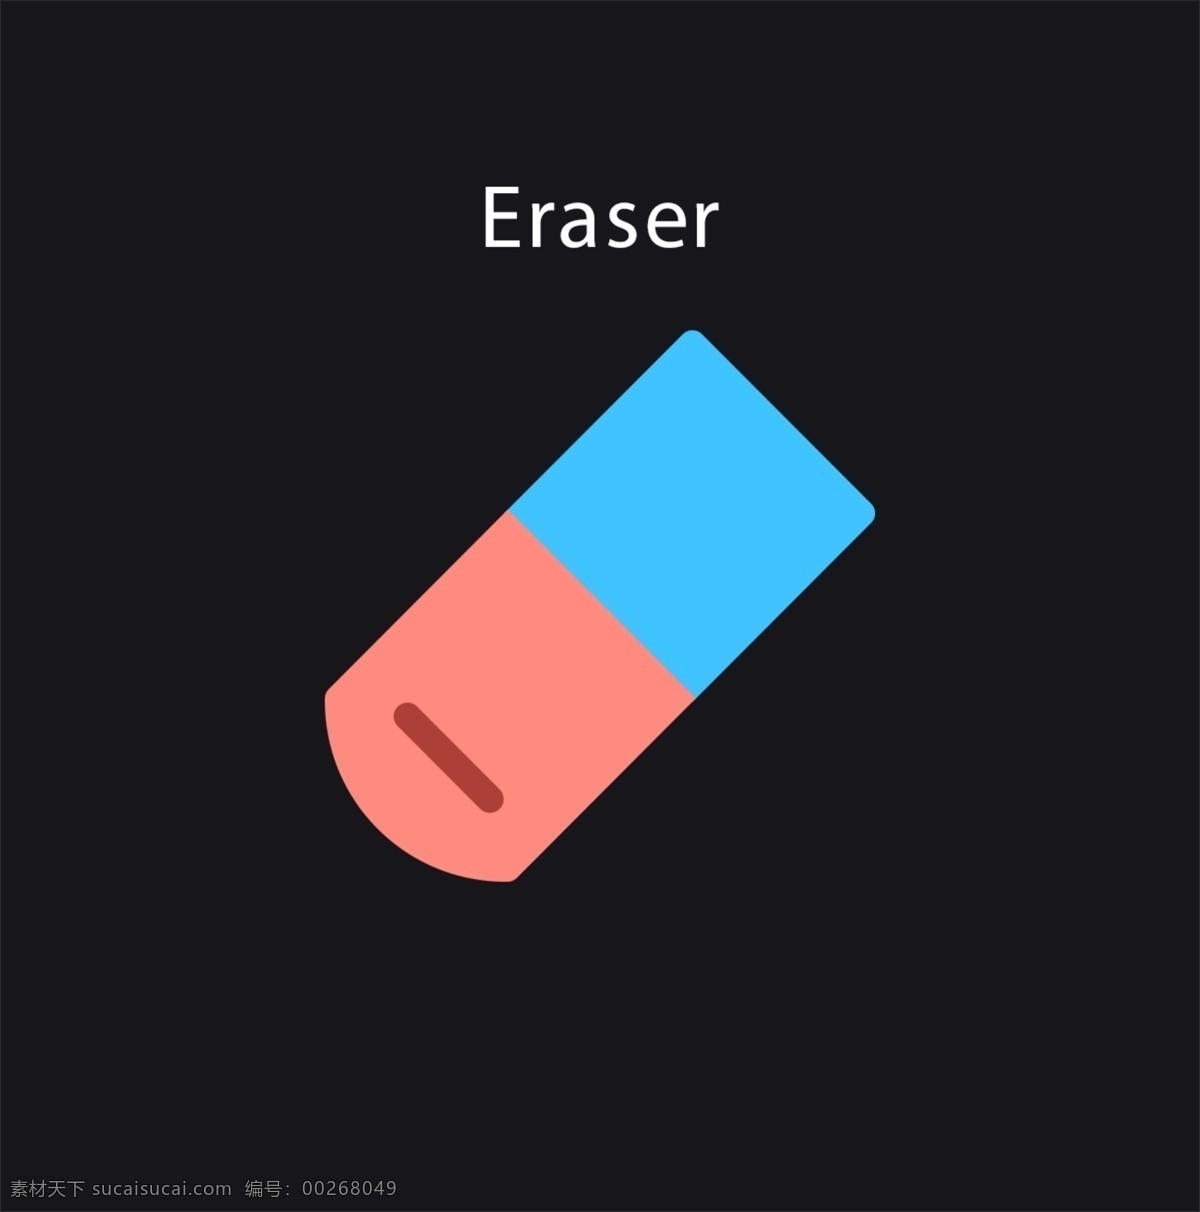 eraser 橡皮 图标 ui ui小图标 扁平化 简洁